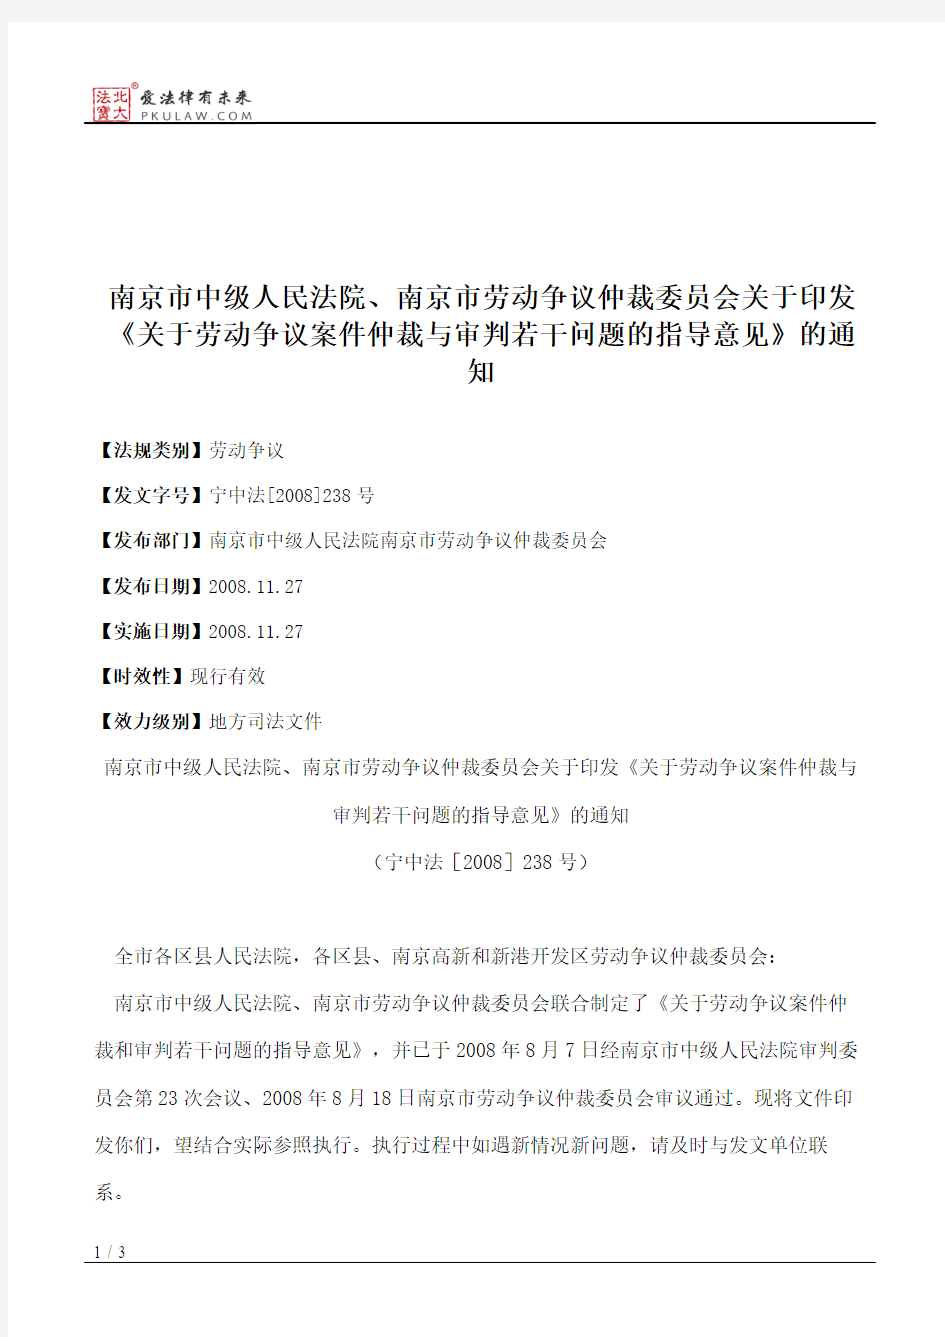 南京市中级人民法院、南京市劳动争议仲裁委员会关于印发《关于劳